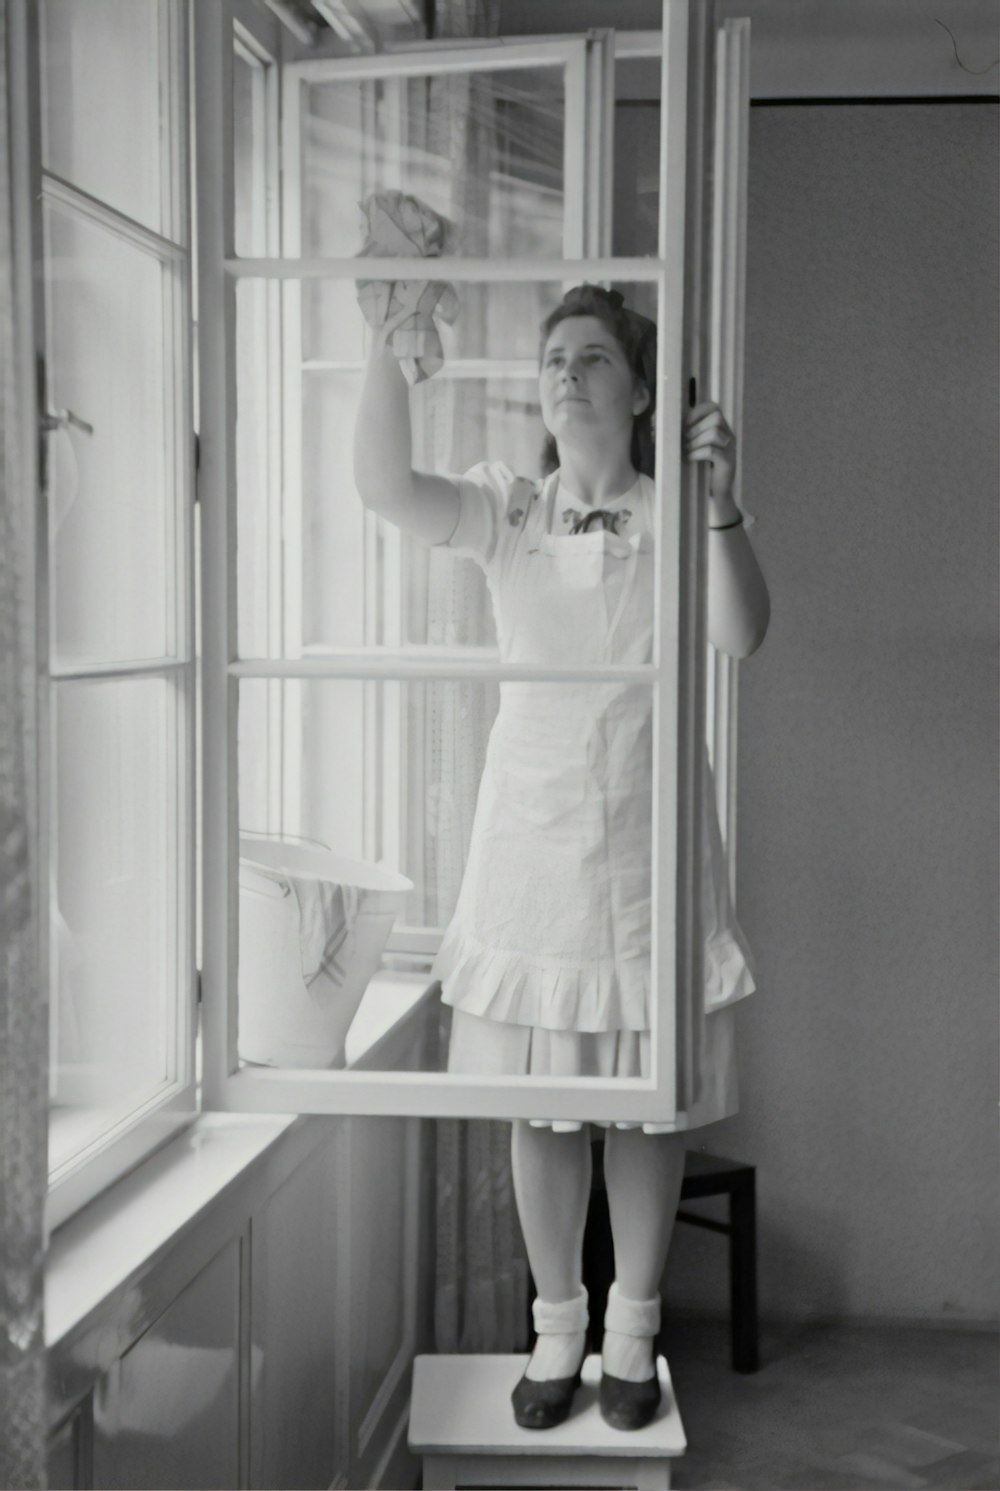 Photographie en niveaux de gris d’une femme nettoyant une vitre